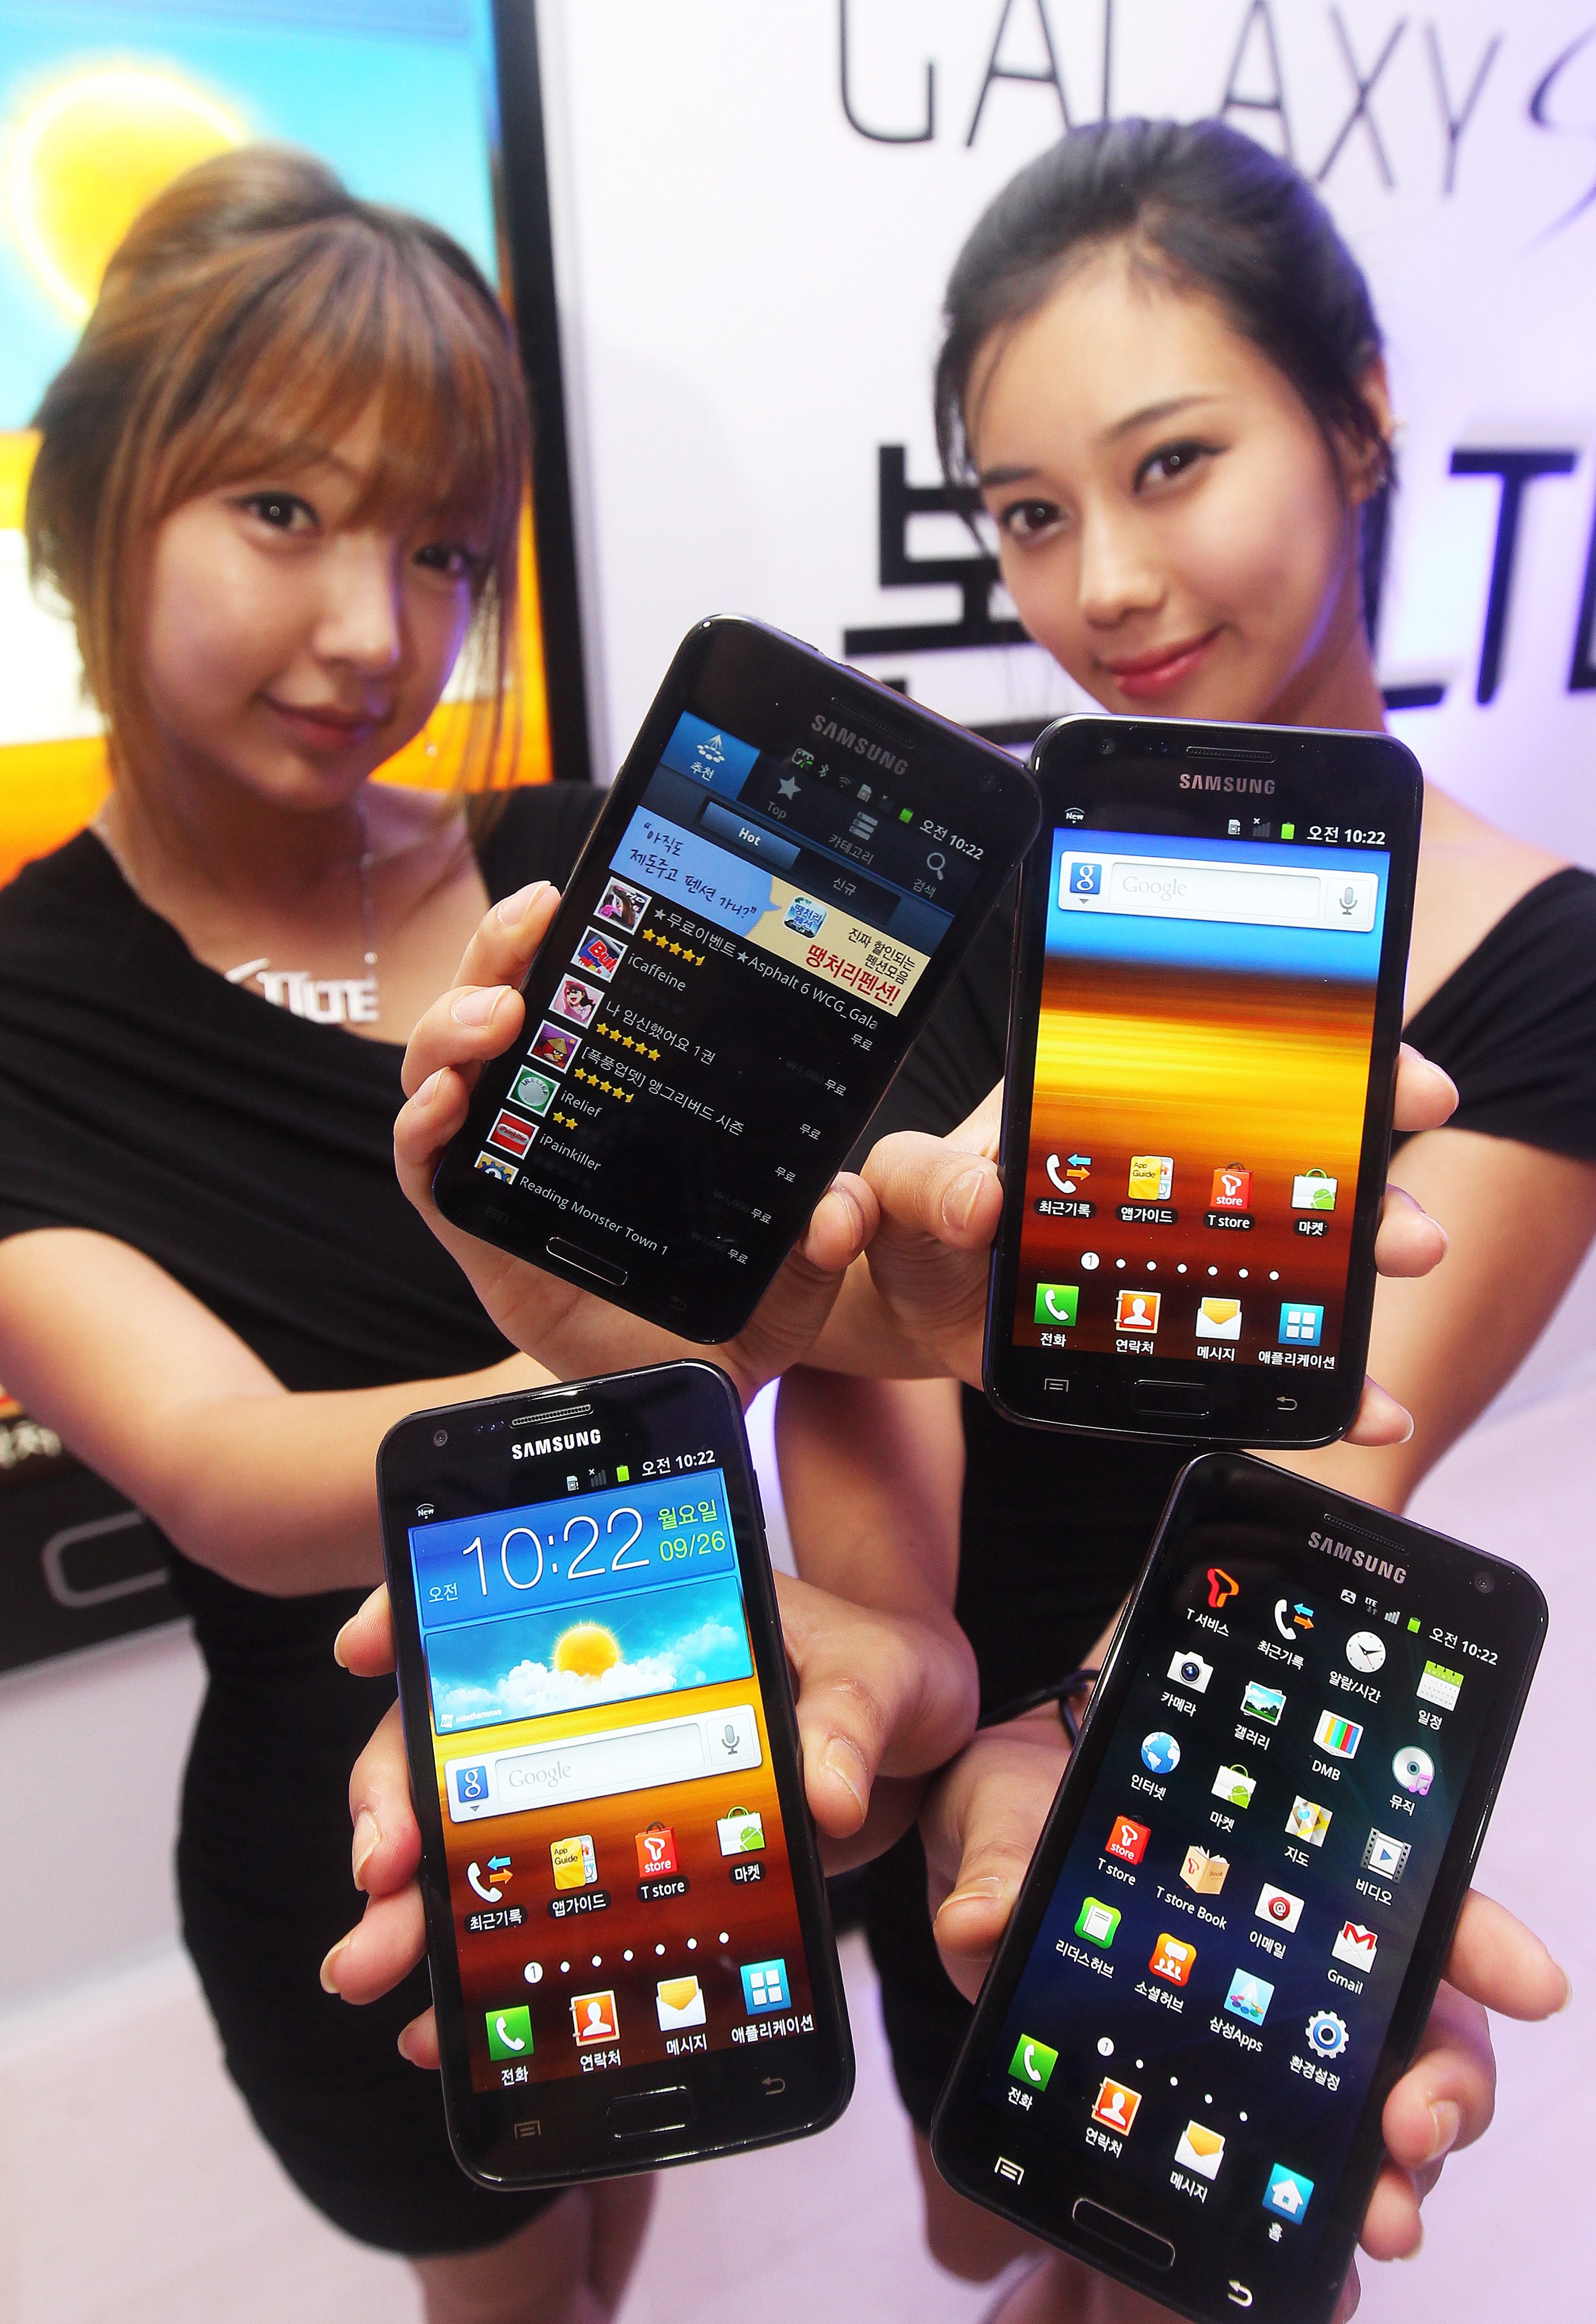 Четириядрен Galaxy S III ще дебютира на MWS